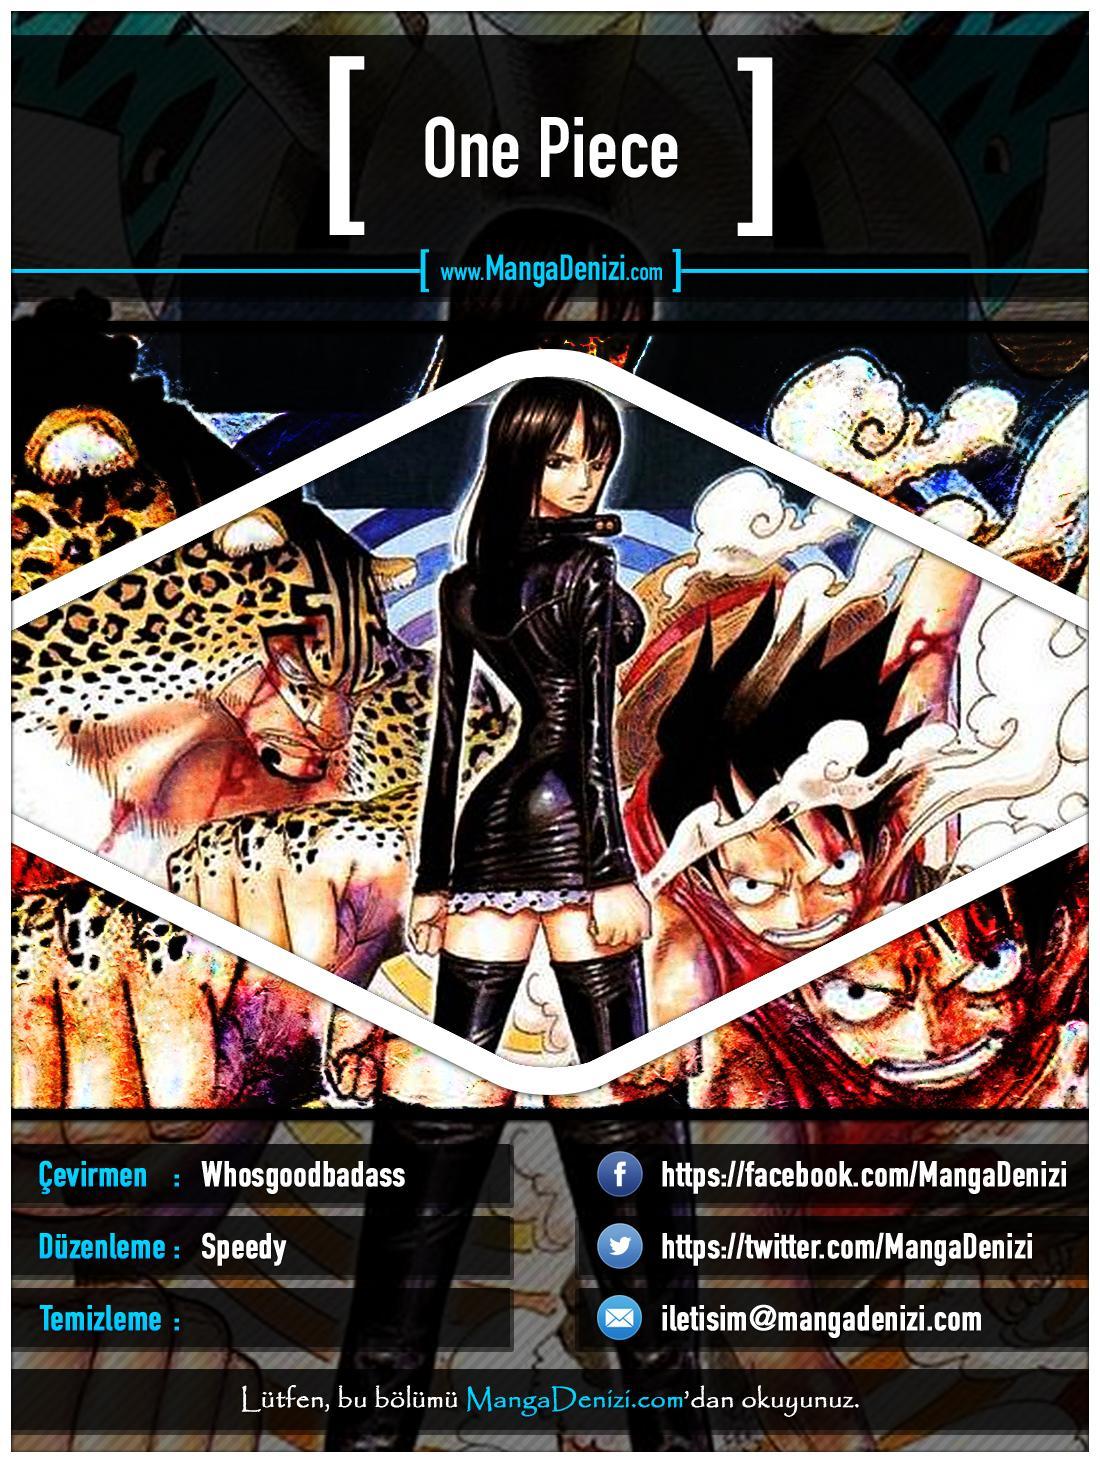 One Piece [Renkli] mangasının 0322 bölümünün 1. sayfasını okuyorsunuz.